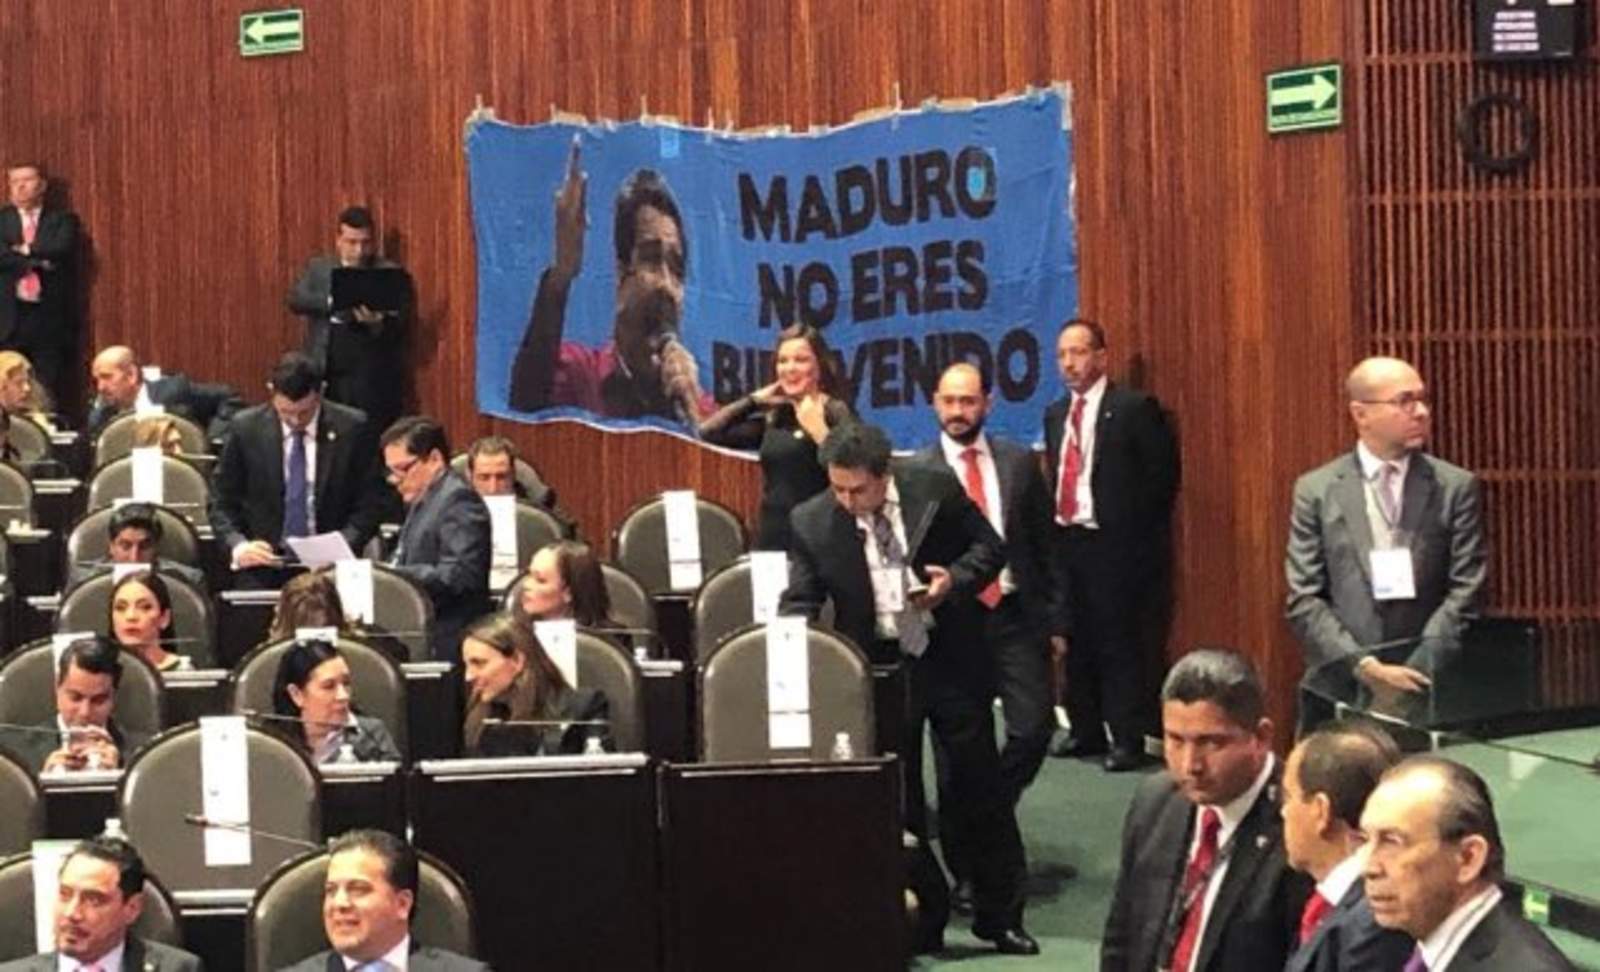 Legisladores panistas colocan manta contra Maduro en San Lázaro